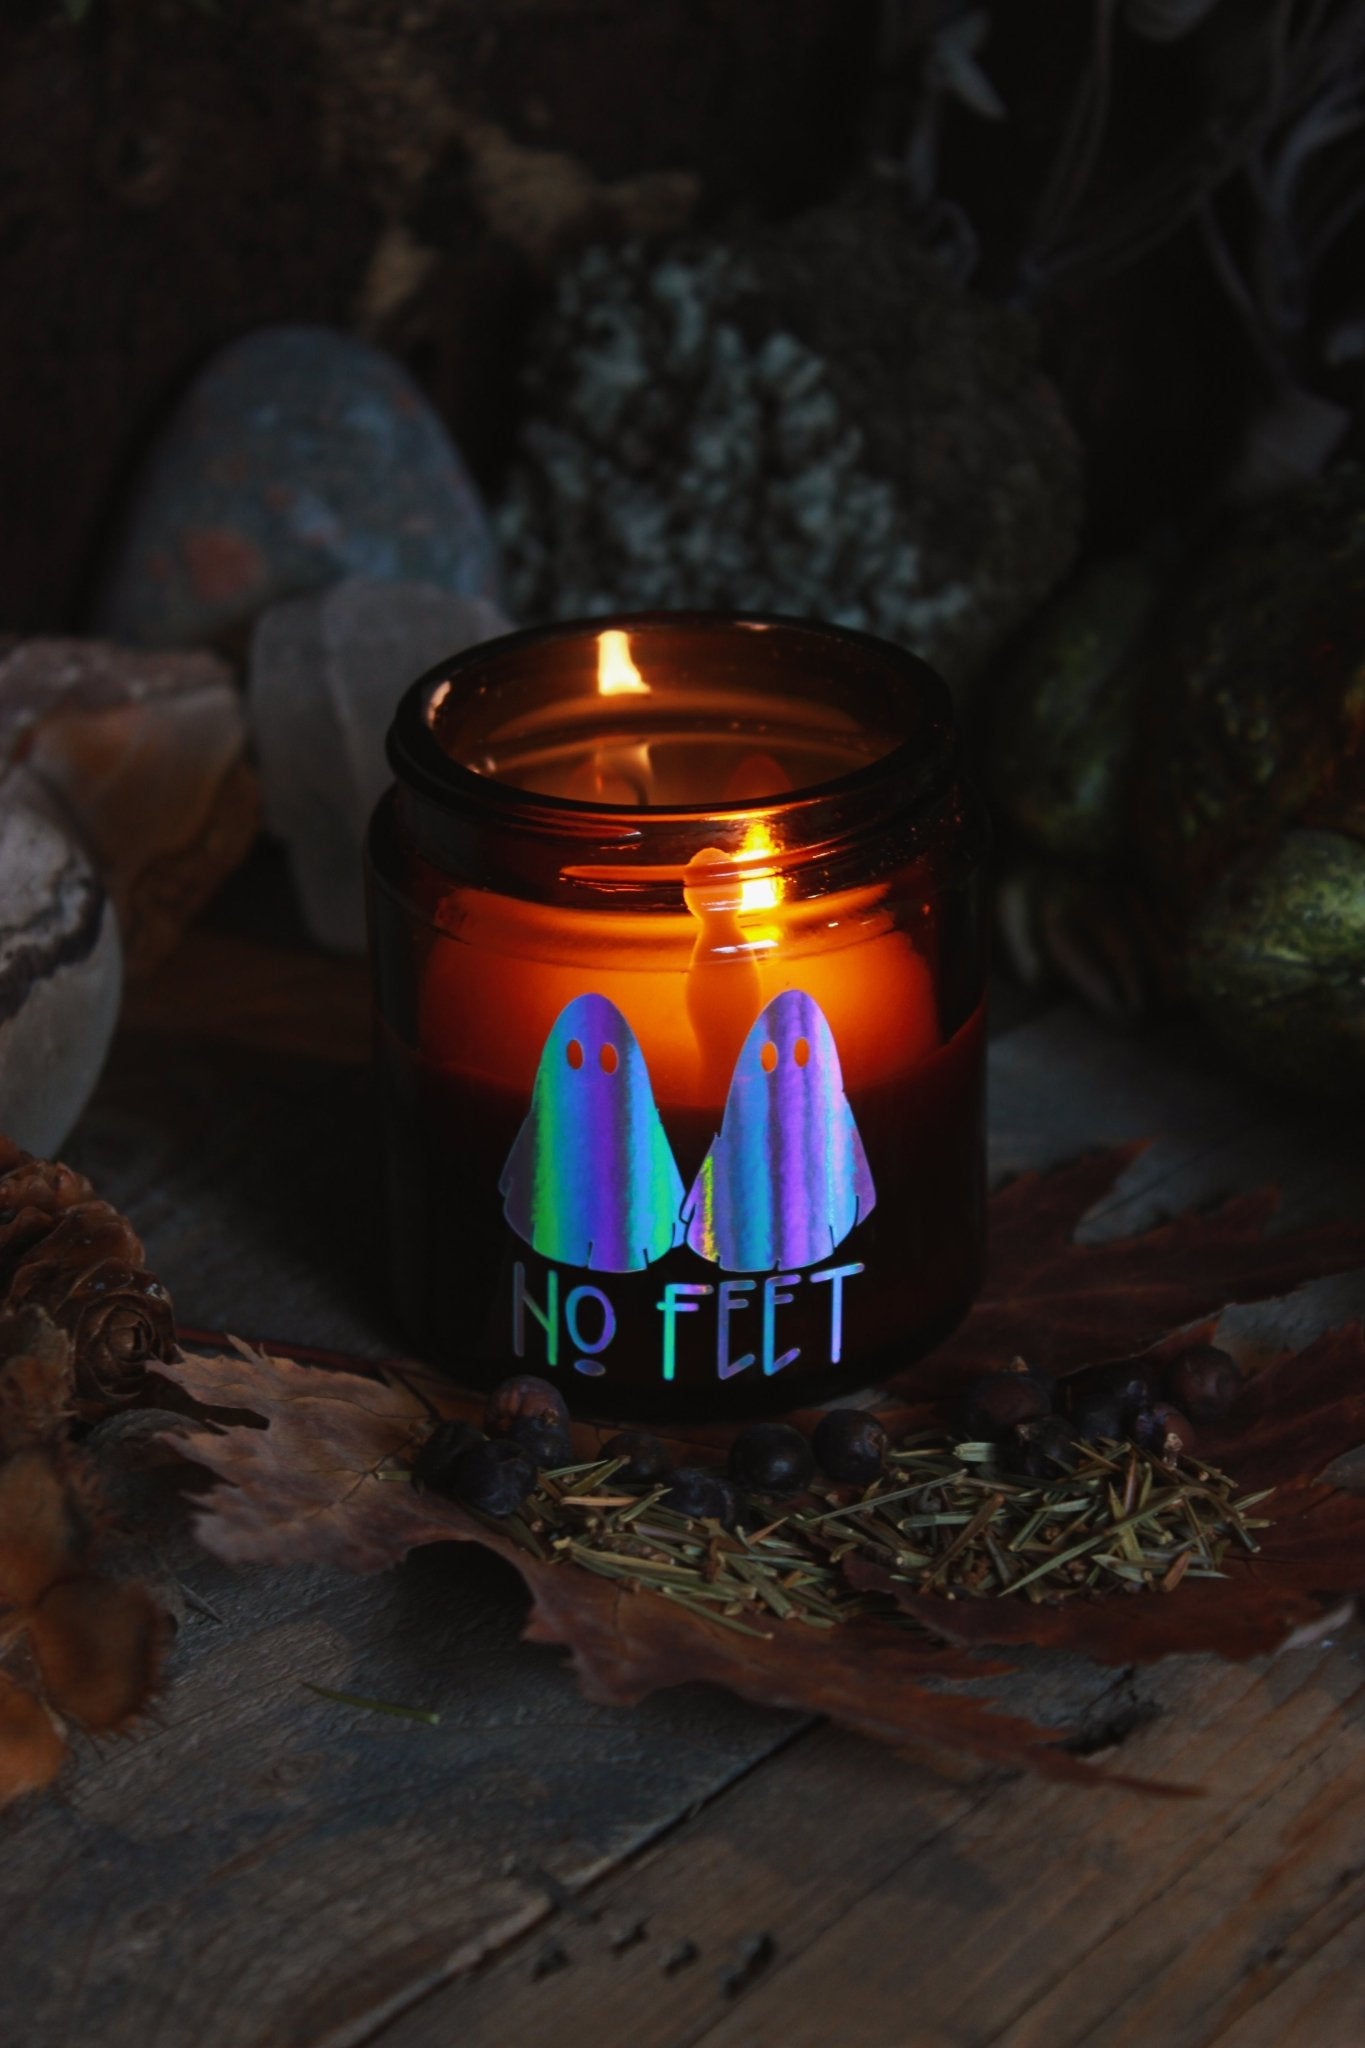 Kräuter-Kerze "No Feet" - Das Bild zeigt ein atmosphärisches Bild eines brennenden Kerzenglases mit dem Aufdruck “NO FEET” und zwei bunten Geisterbildern, umgeben von herbstlichen Elementen wie trockenen Blättern und Tannenzapfen.